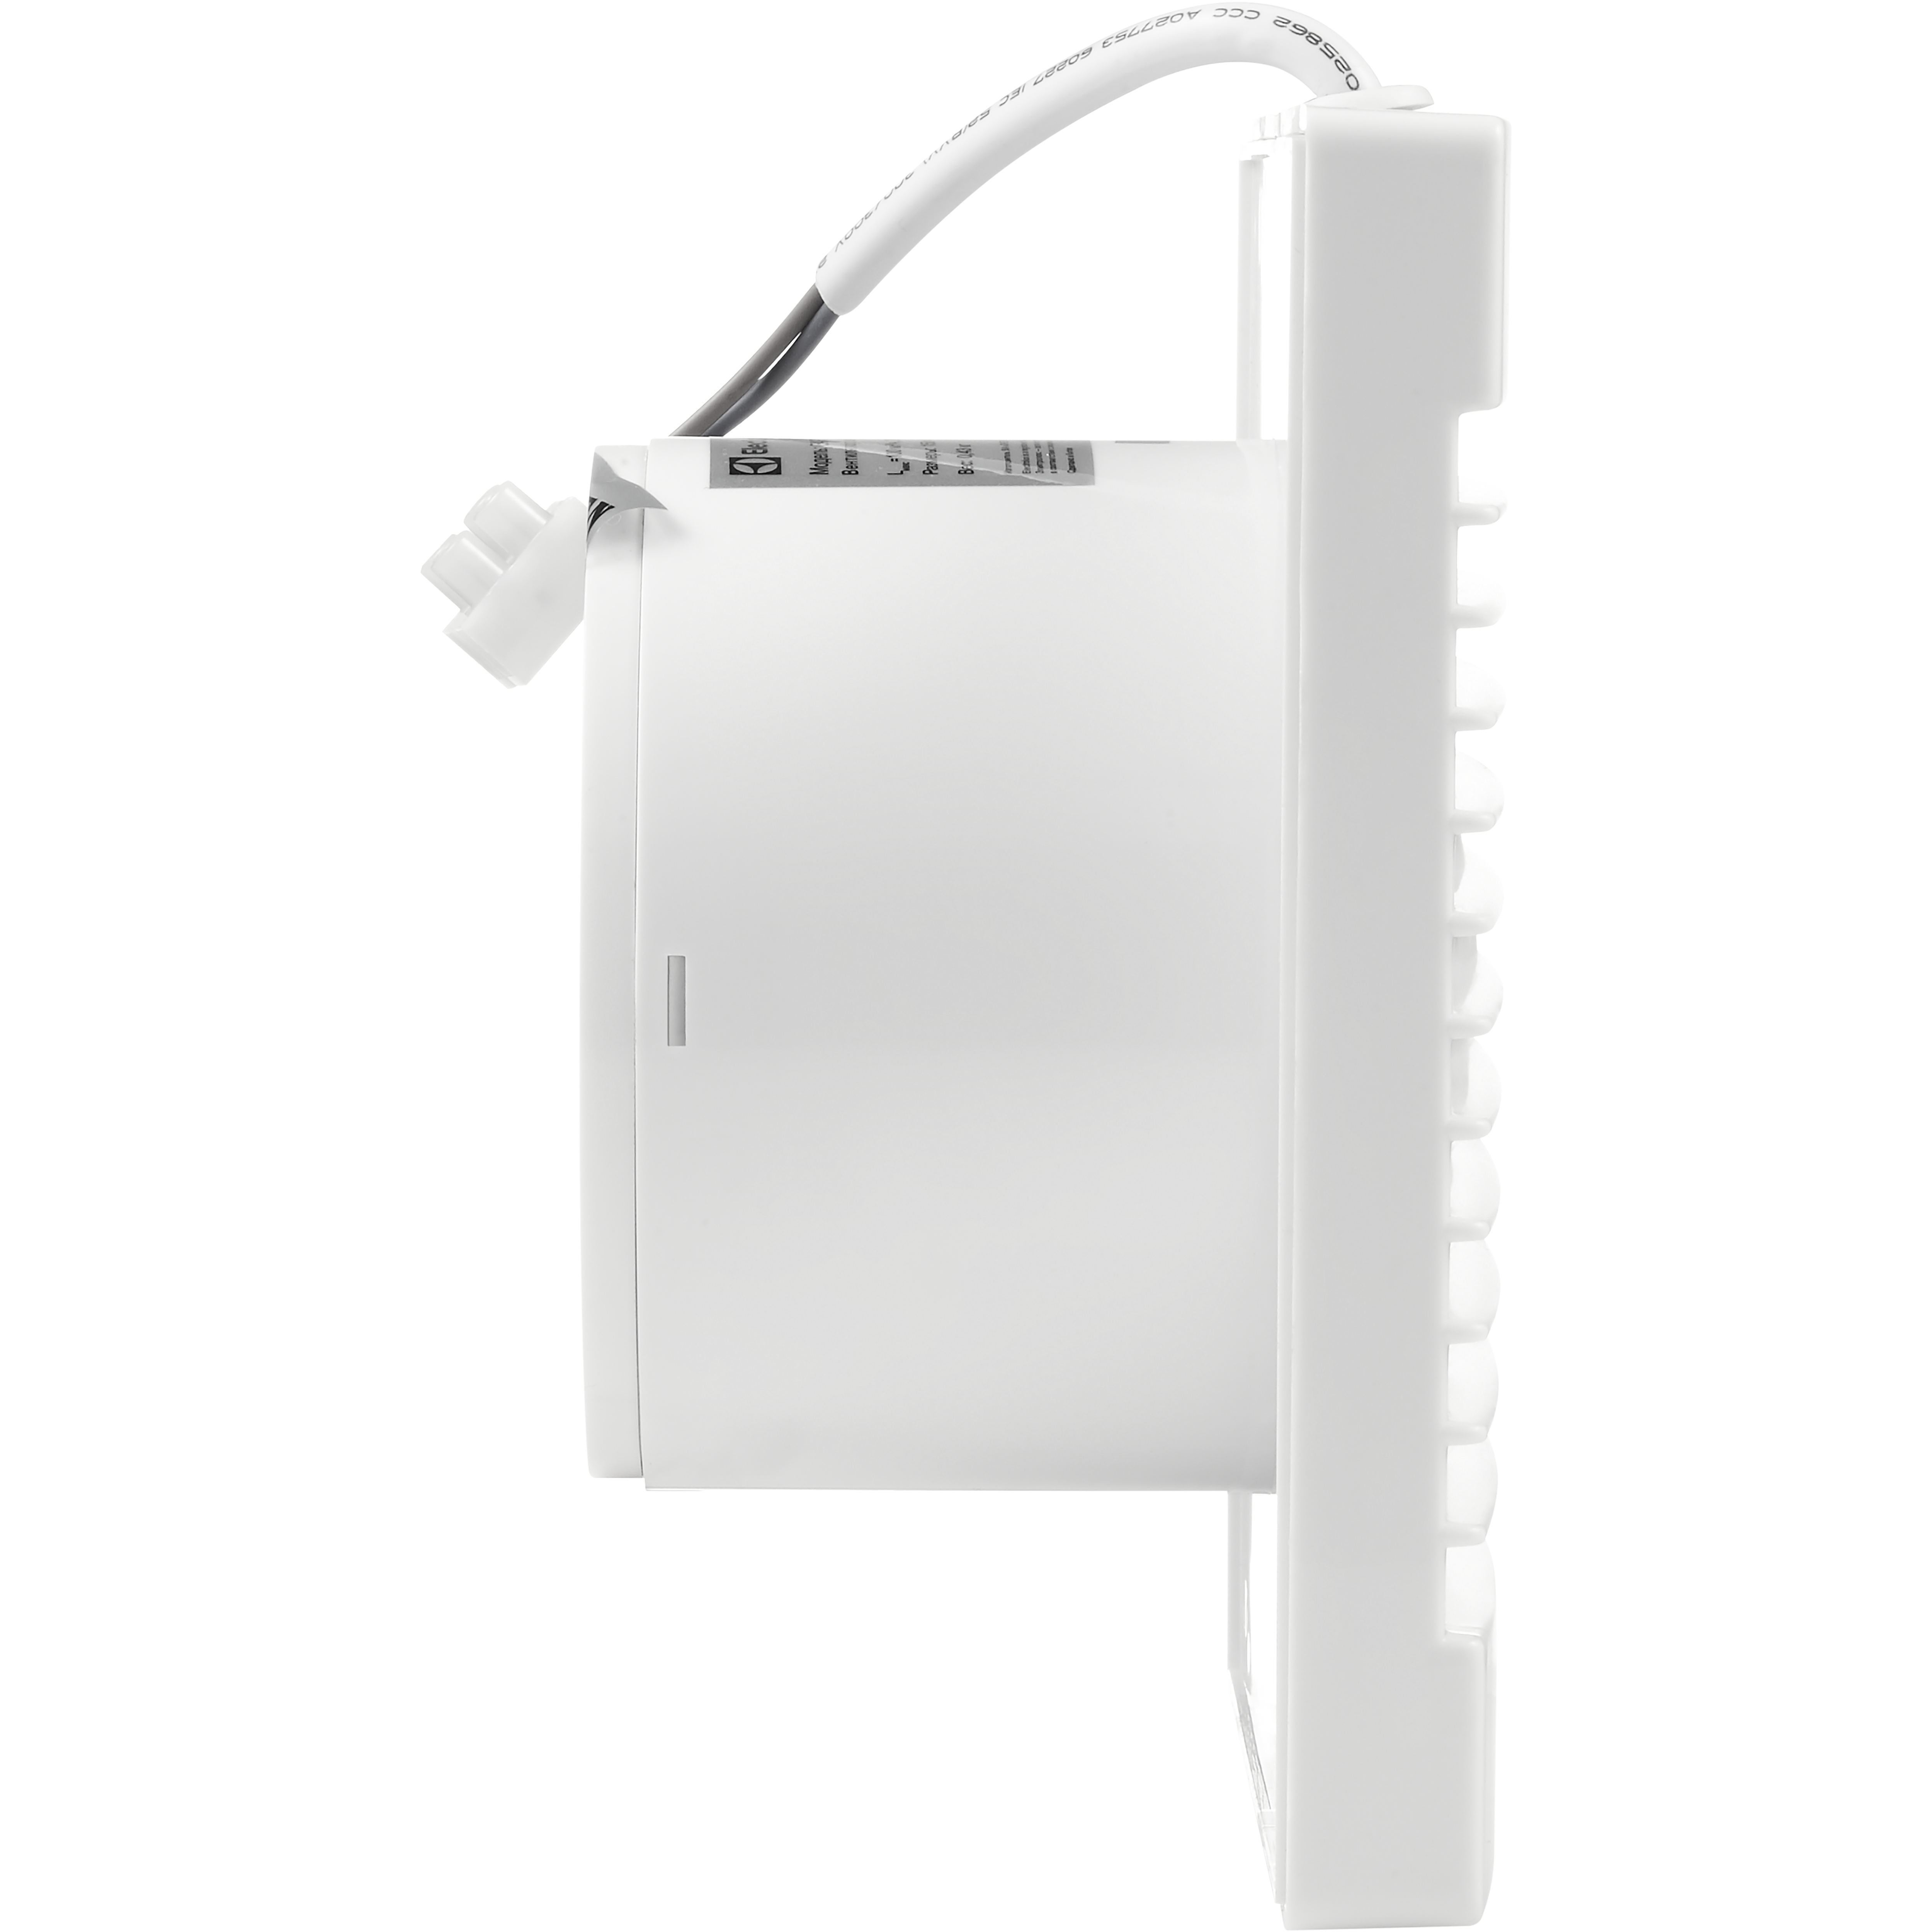 Вентилятор вытяжной Electrolux Basic EAFB-100TH (таймера и гигростатом) от магазина ЛесКонПром.ру